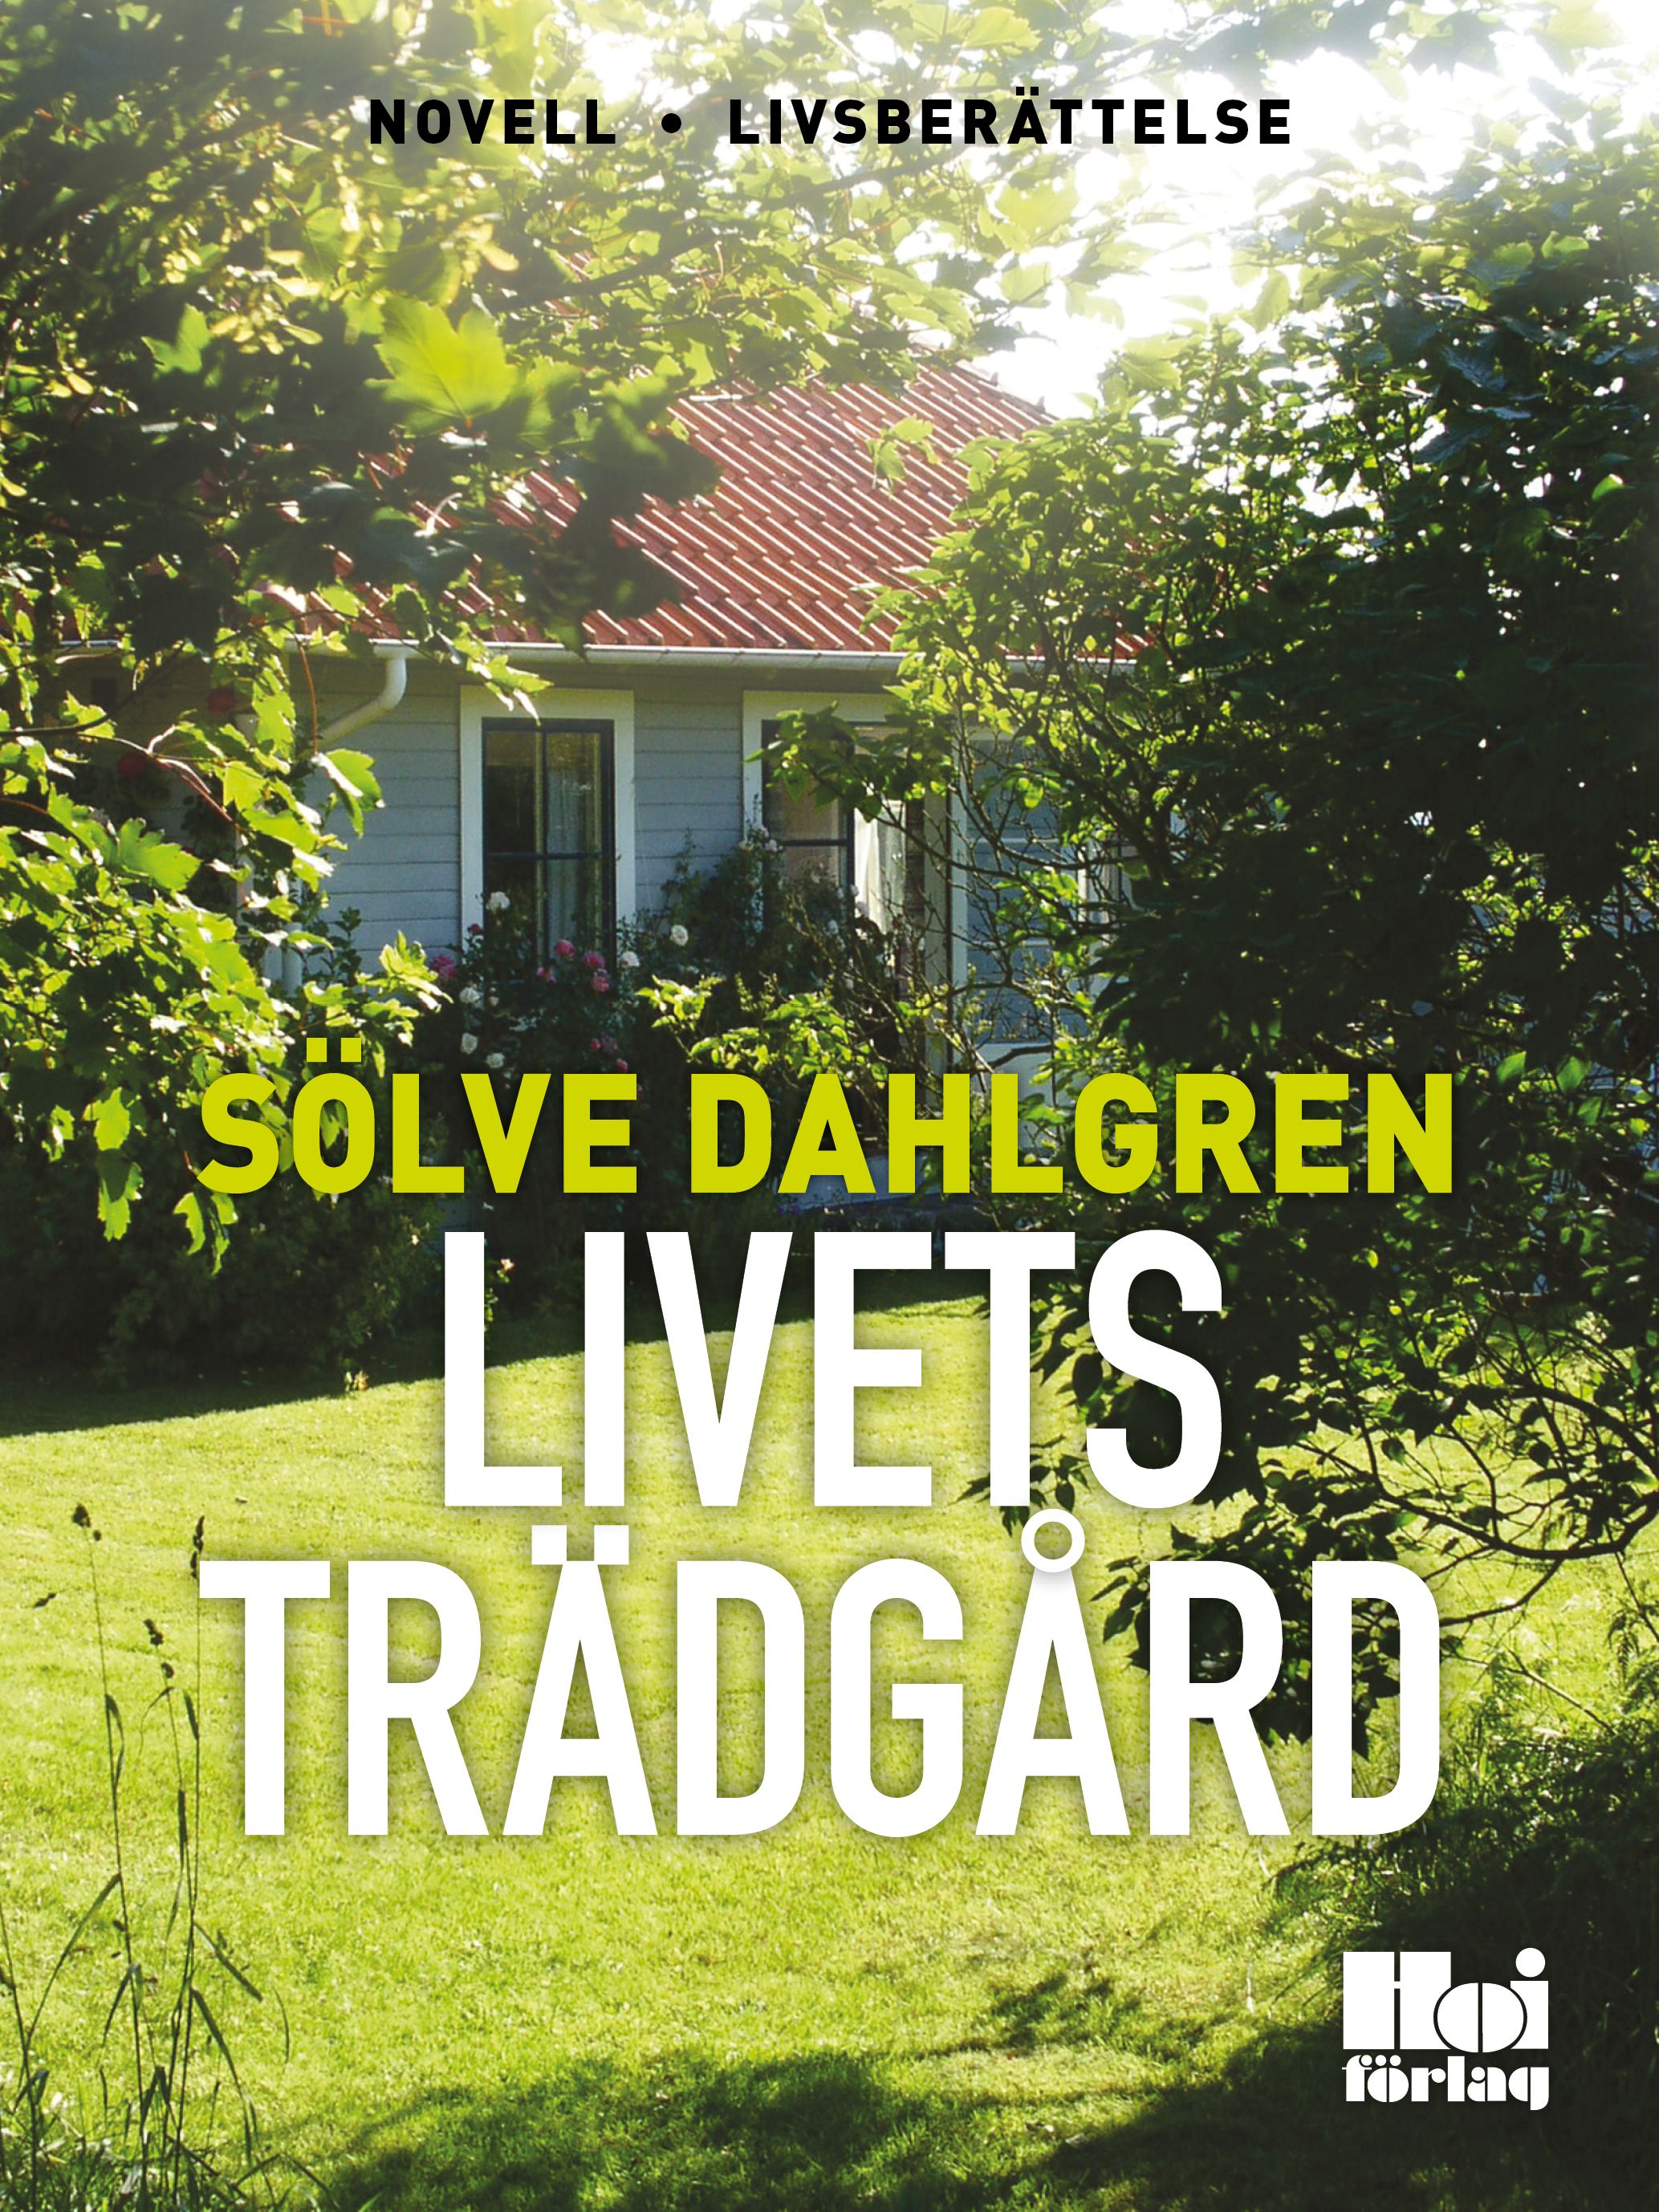 Livets trädgård, e-bok av Sölve Dahlgren